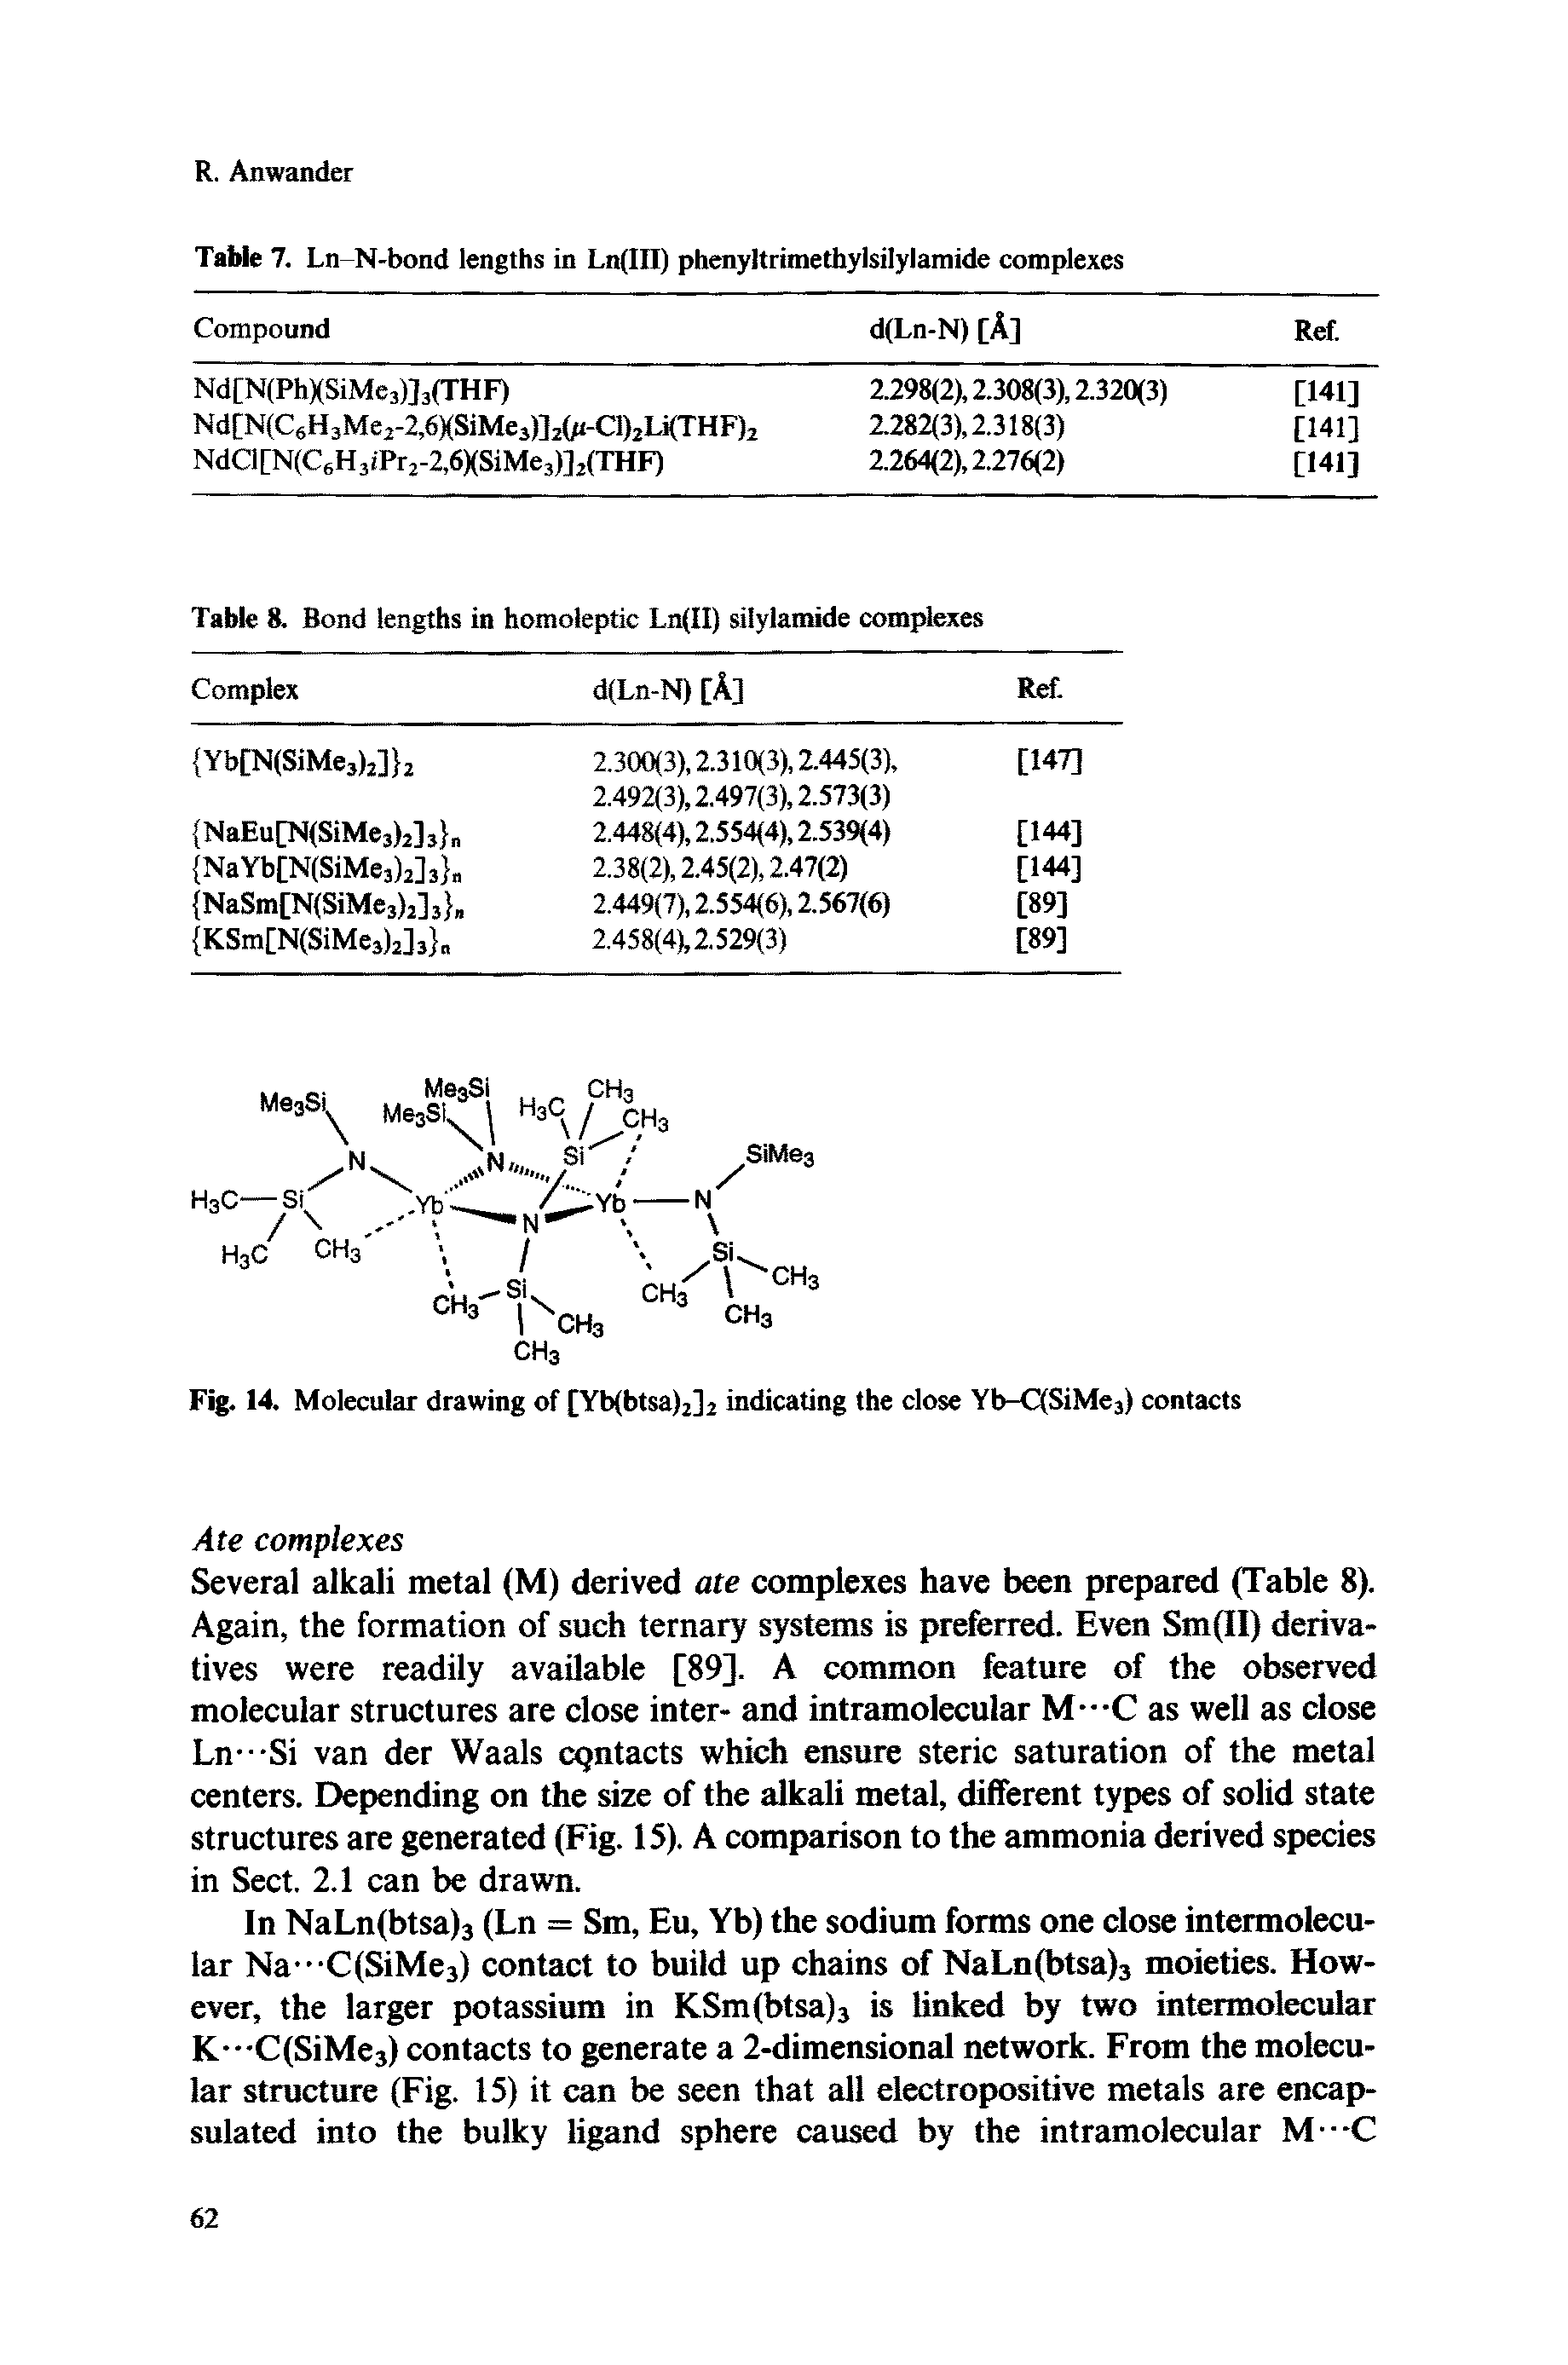 Fig. 14. Molecular drawing of [Yb(btsa)2]2 indicating the close Yb-C(SiMe3) contacts...